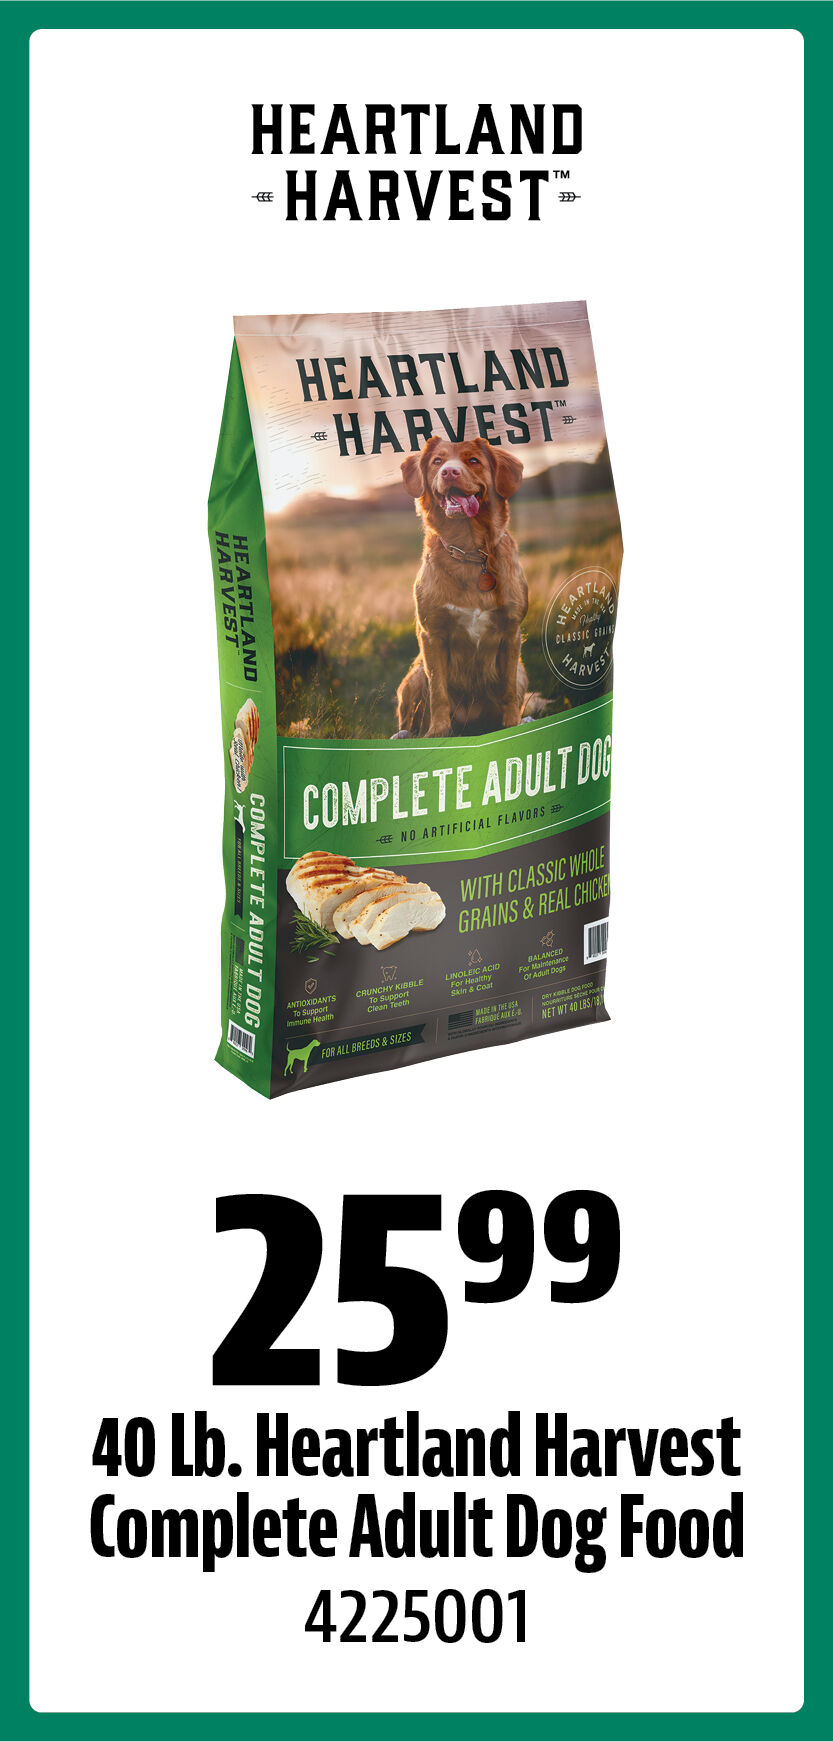 40 Lb. Heartland Harvest Complete Adult Dog Food